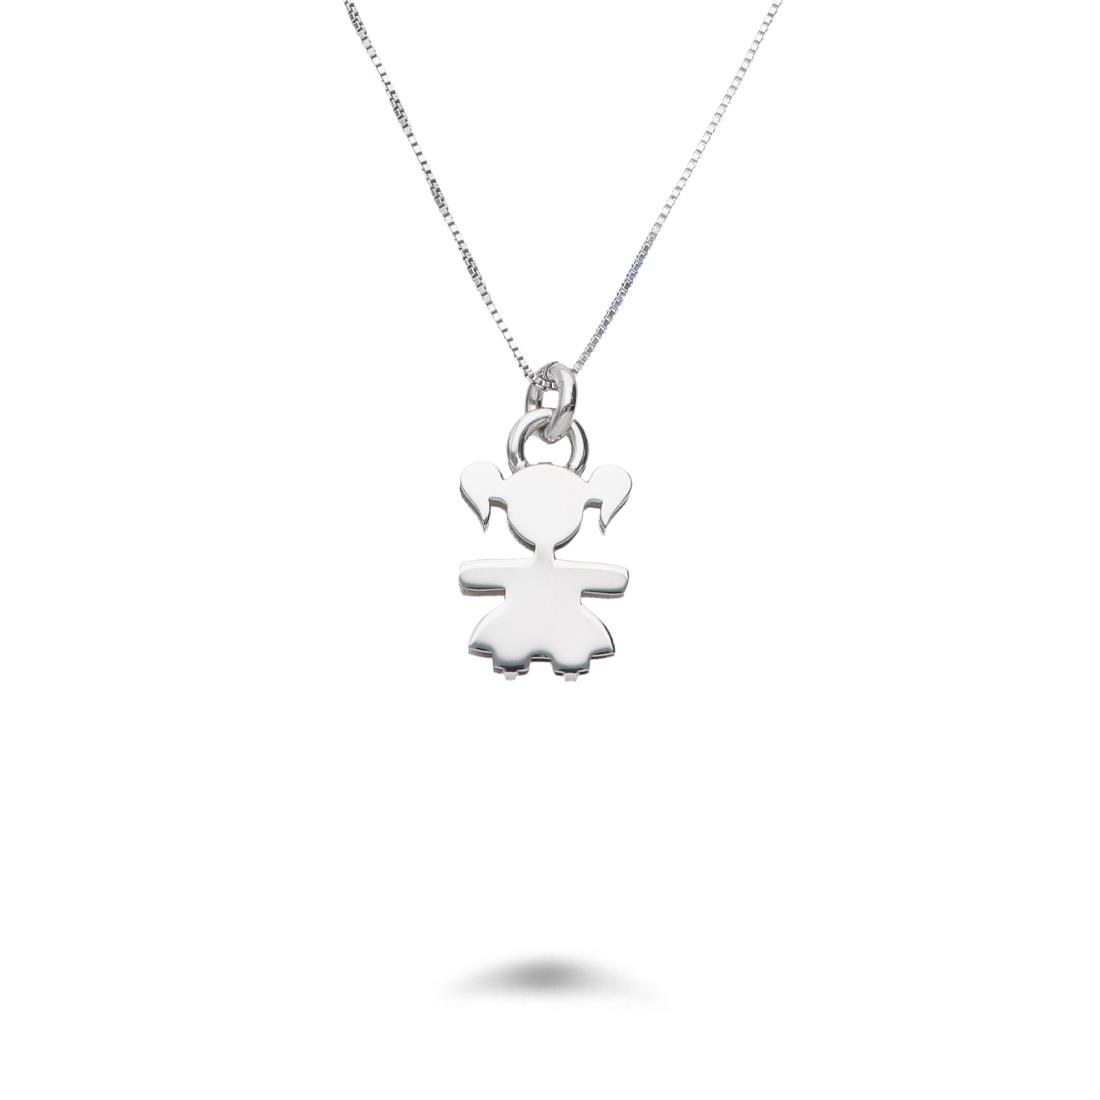 Necklace in rhodium-plated silver with little girl pendant - DESIDERI PREZIOSI